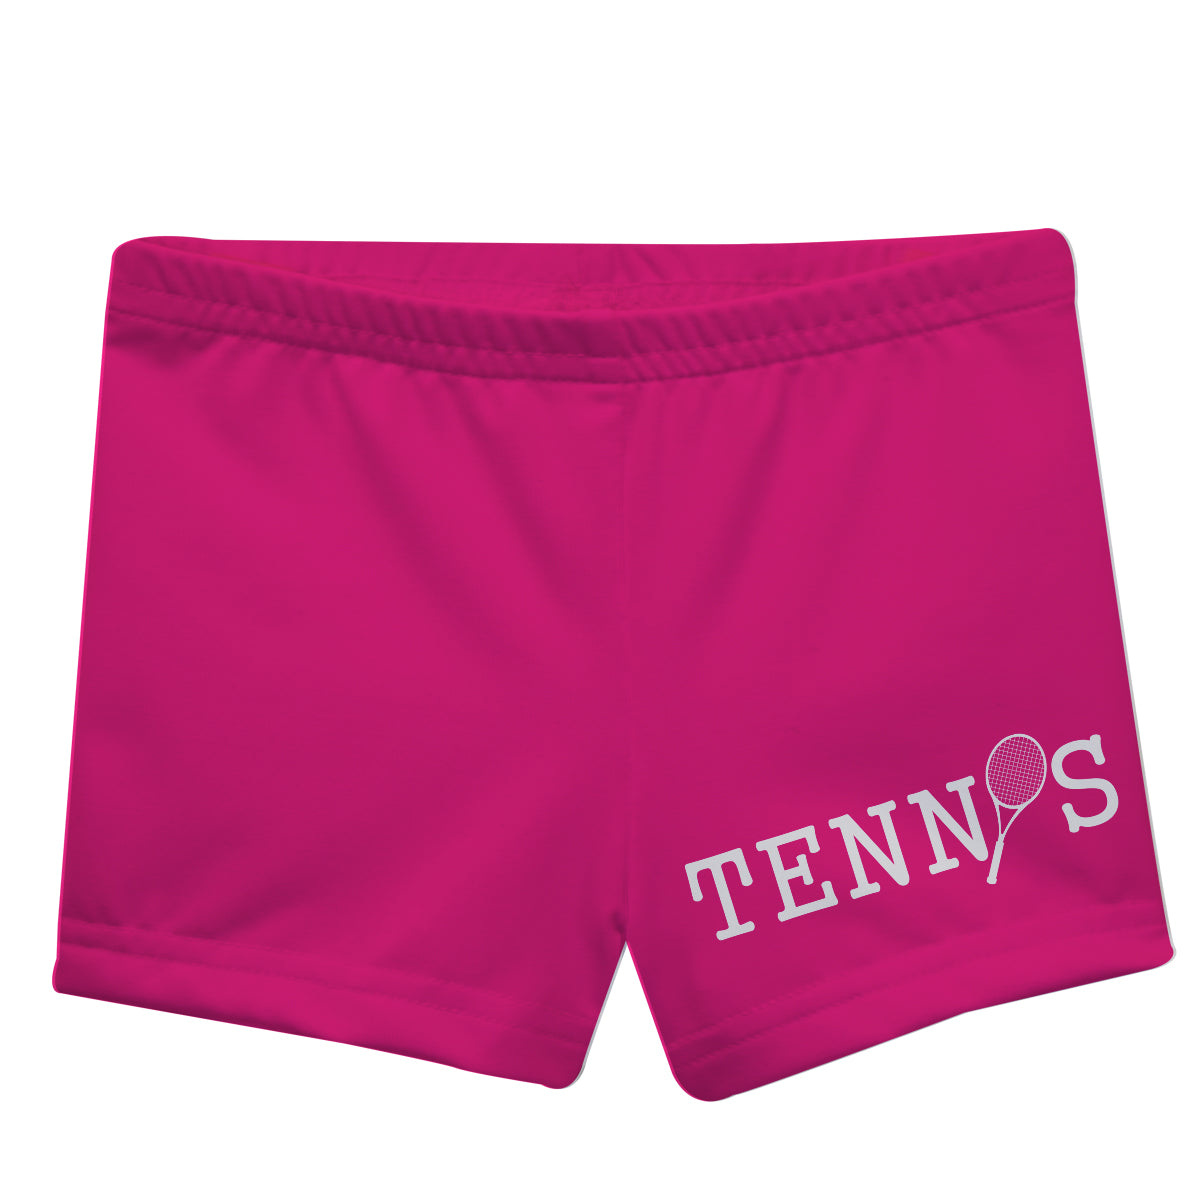 Tennis Hot Pink Girls Shorties - Wimziy&Co.